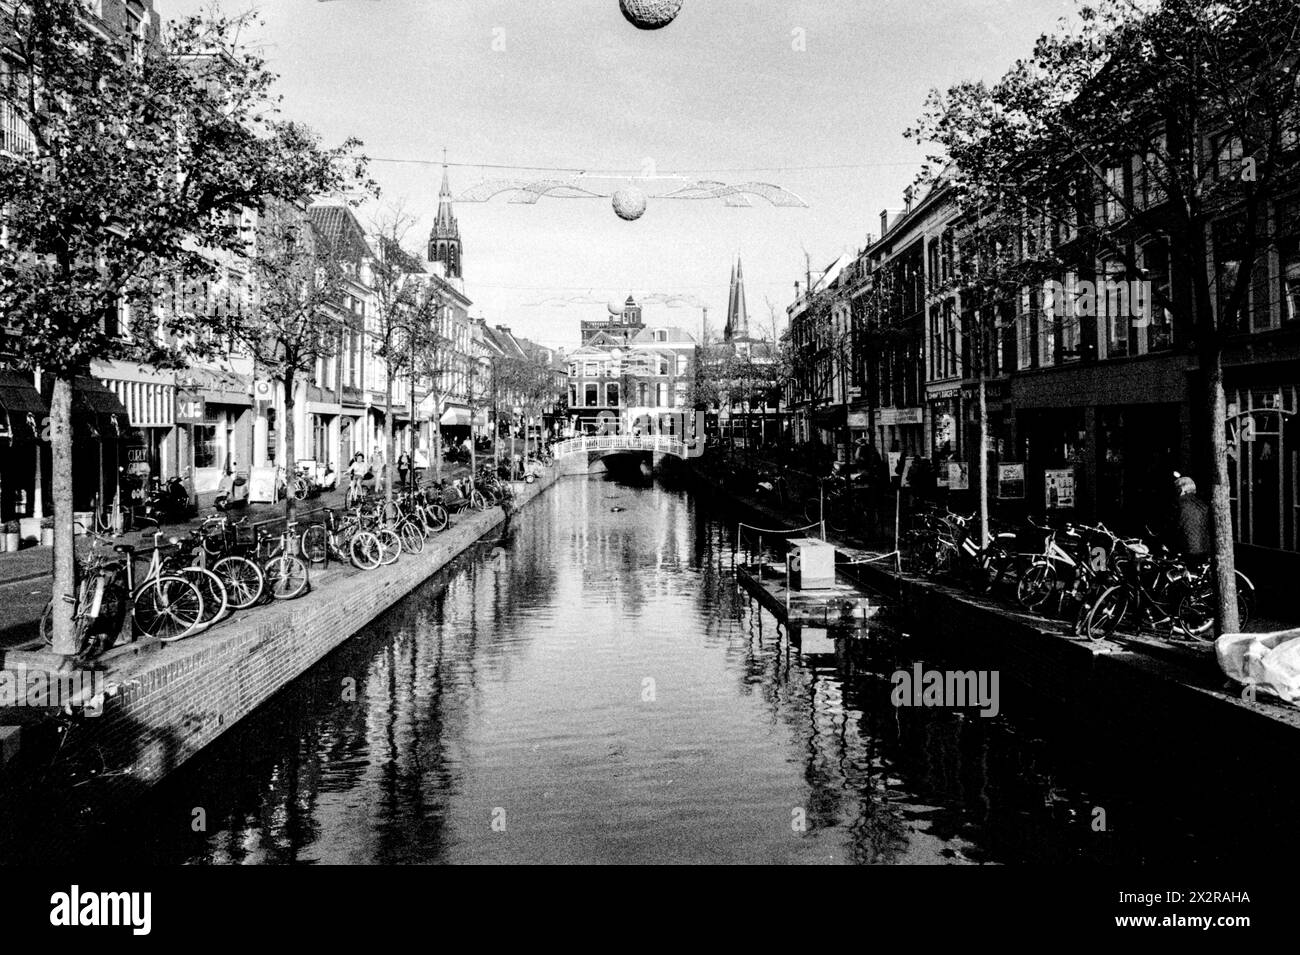 Antike Kanäle Blick auf einen der vielen Kanäle in der Innenstadt von Delft, einem riesigen, historischen Tourismus- und Reiseziel. Delft, Niederlande. Delft Down Town / Canal Zone Zuid-Holland Nederland Copyright: XGuidoxKoppesxPhotox Stockfoto